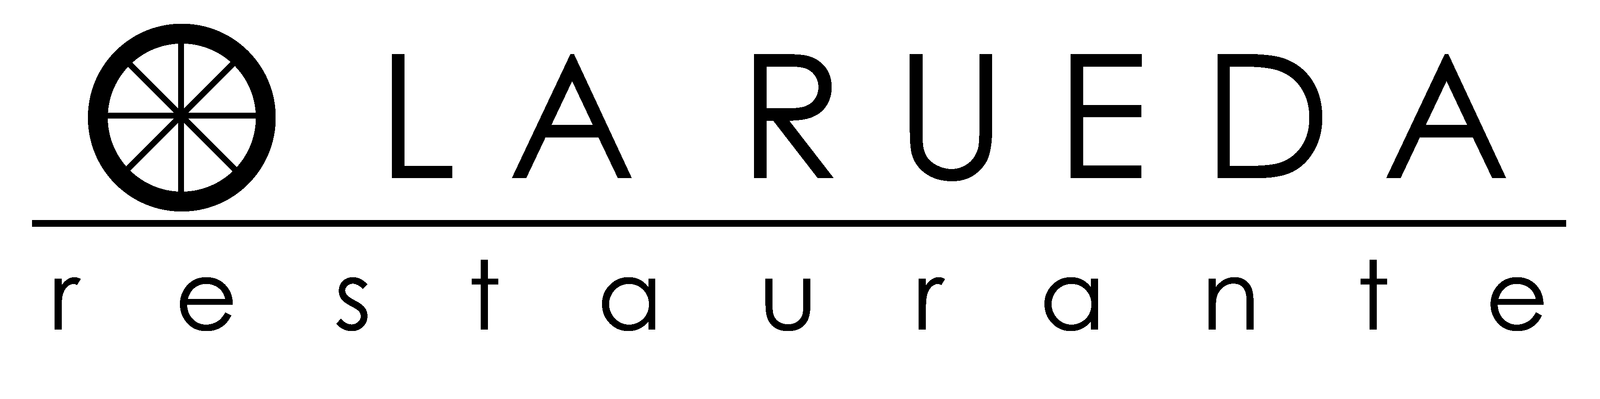 logo-la-rueda-2020-01